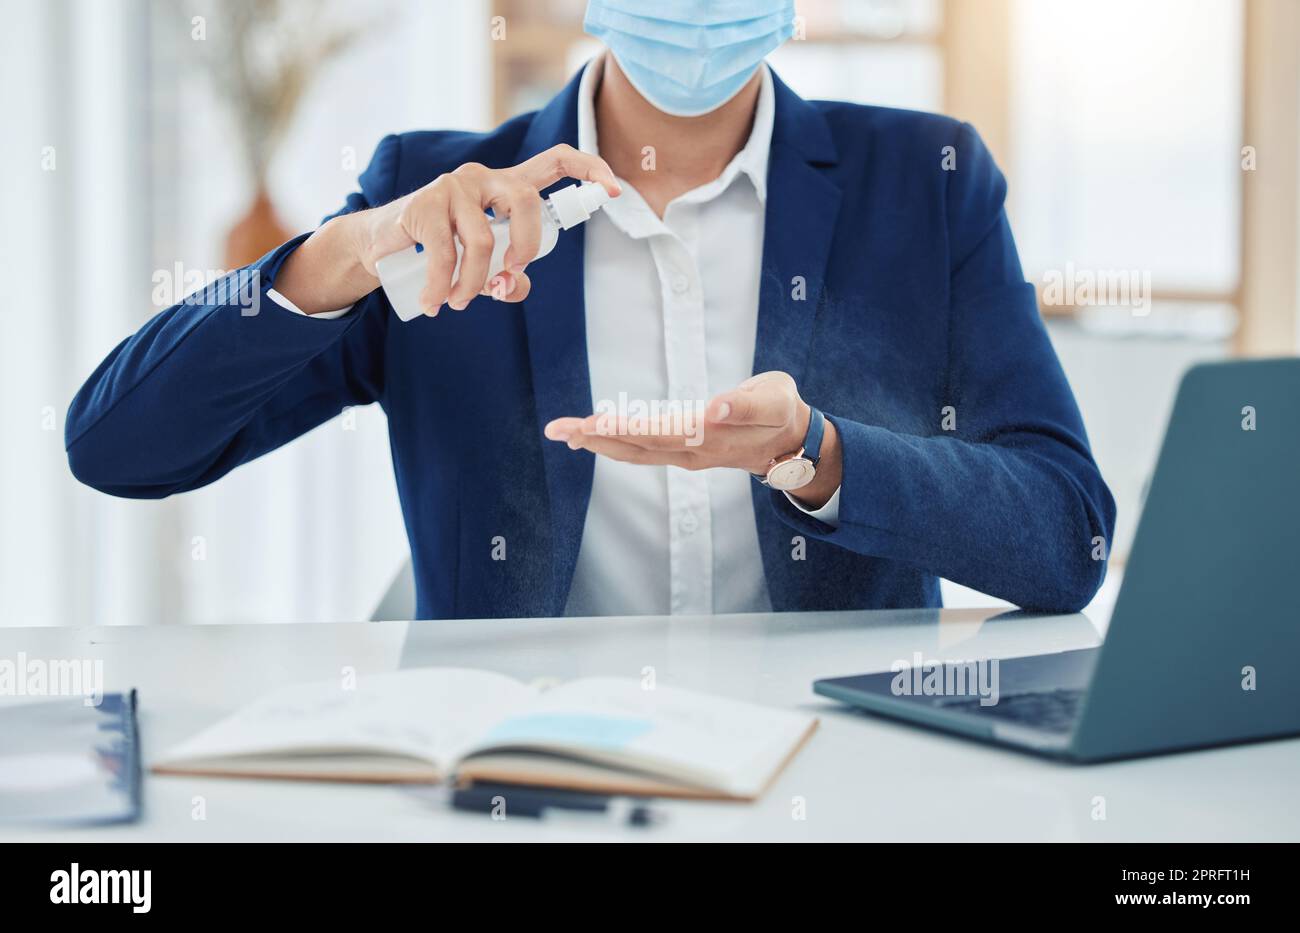 Businesssprühreinigung mit einer covid-Maske während der Arbeit im Büro. Unternehmer reinigen und desinfizieren seine Hände, um die Ausbreitung von Keimen, Korona und Infektionen in der Covid-Pandemie zu verhindern Stockfoto